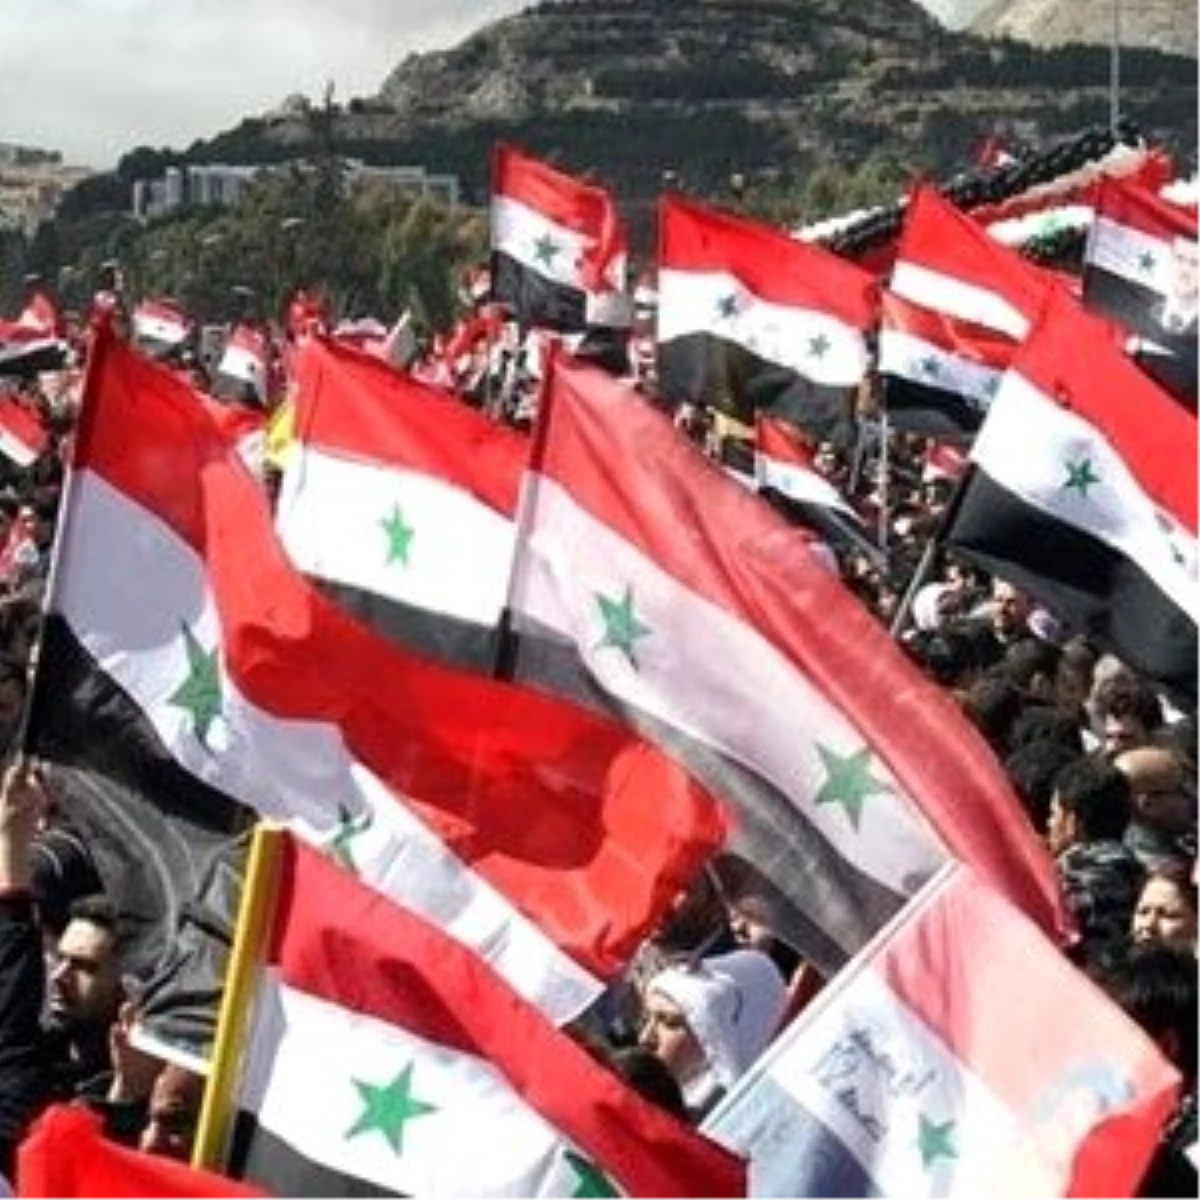 Suriye Muhalefeti, Rusya ile İlişkileri Kesmeyeceklerine Söz Verdi